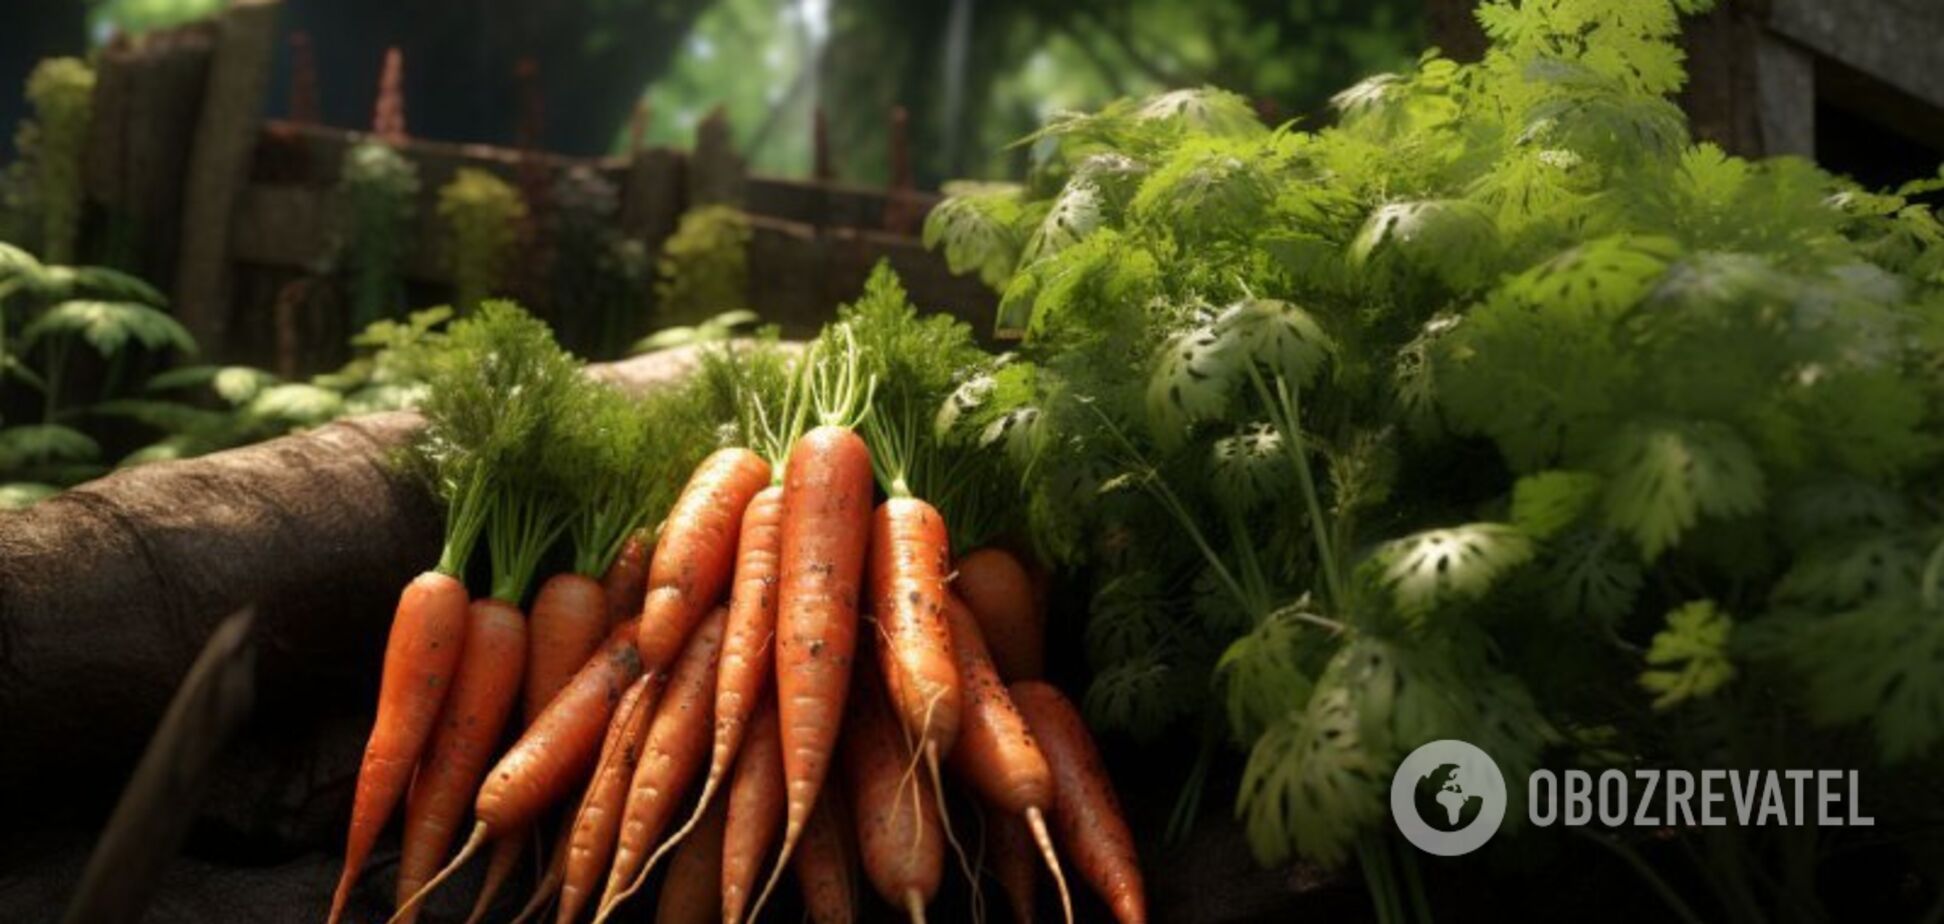  Де і як правильно зберігати моркву, аби була як свіжа усю зиму 